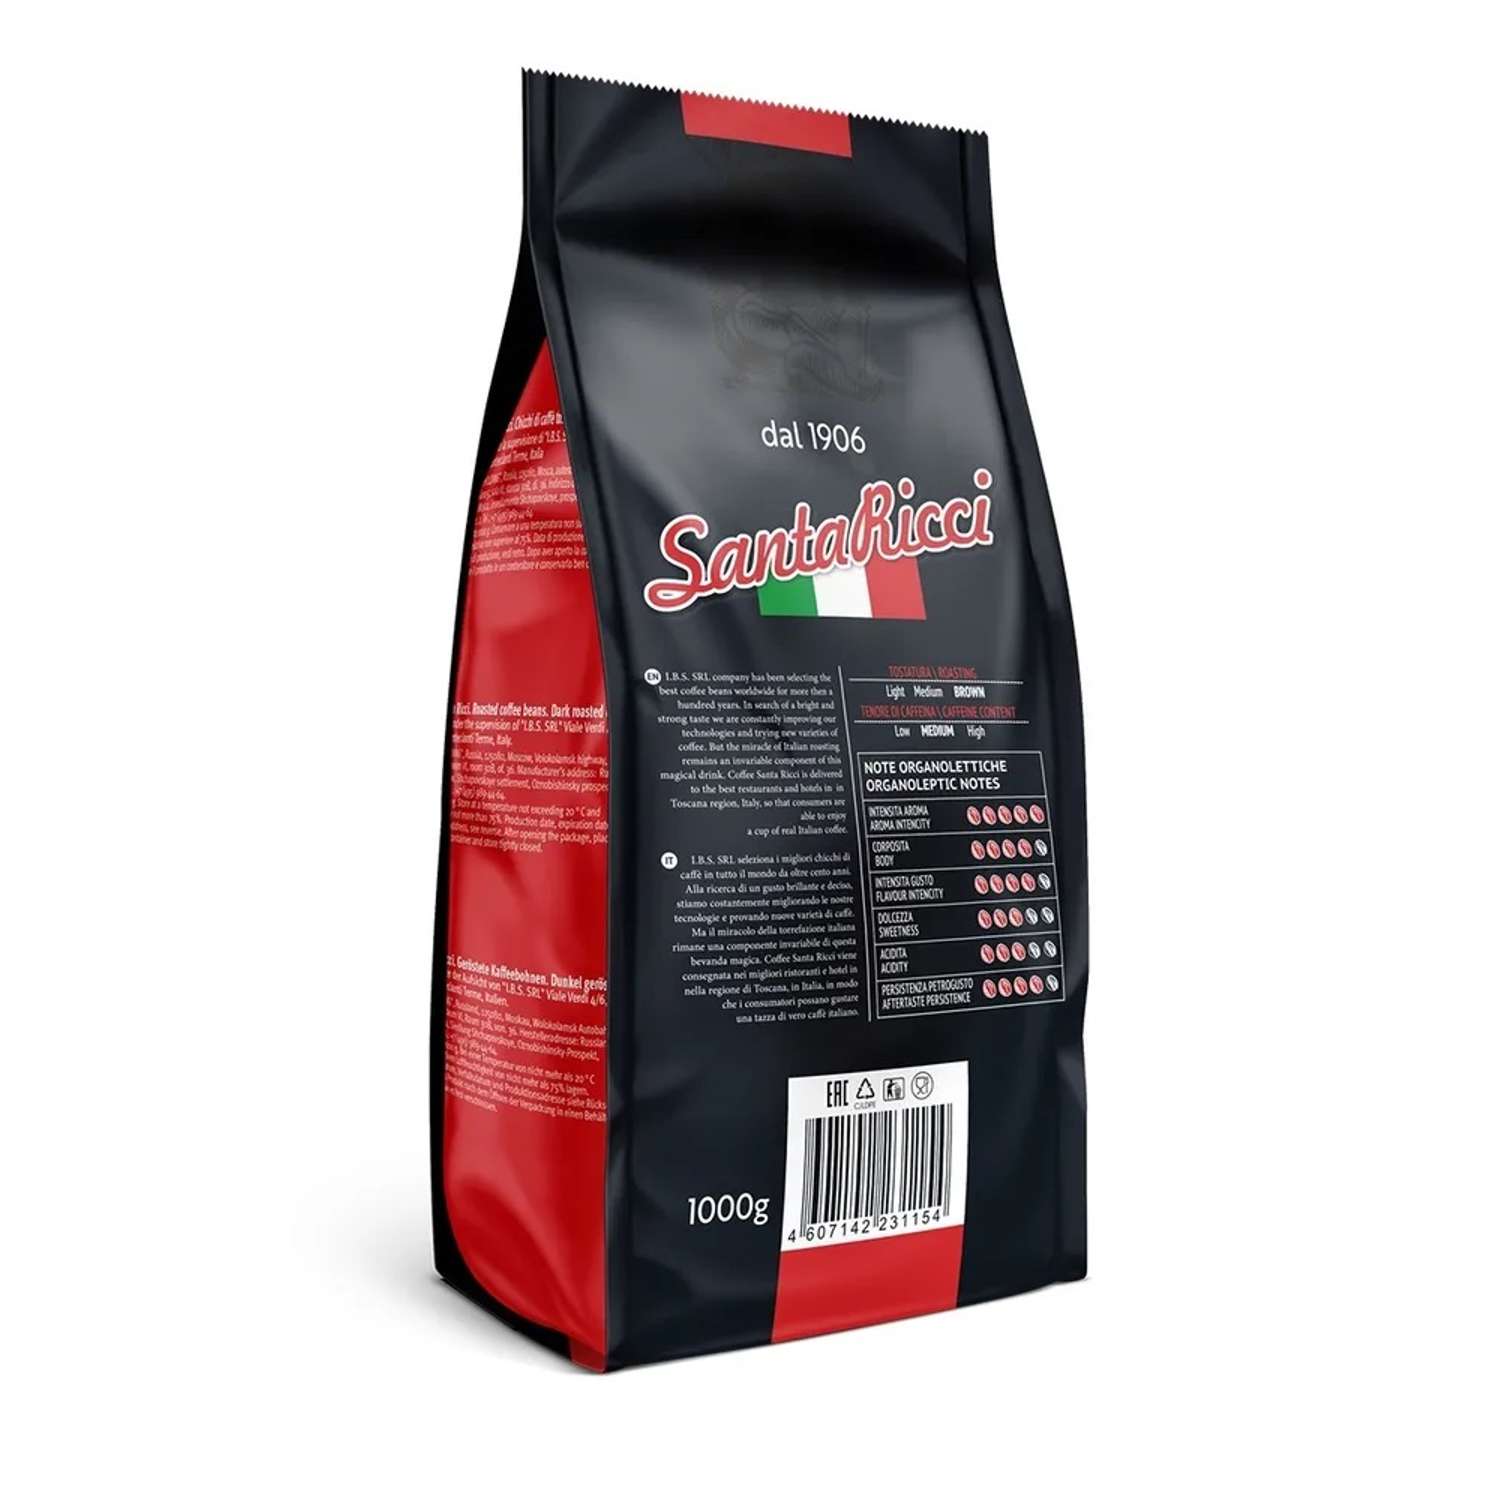 Кофе в зернах Santa Ricci Super Crema 1 кг 1000 гр - фото 4